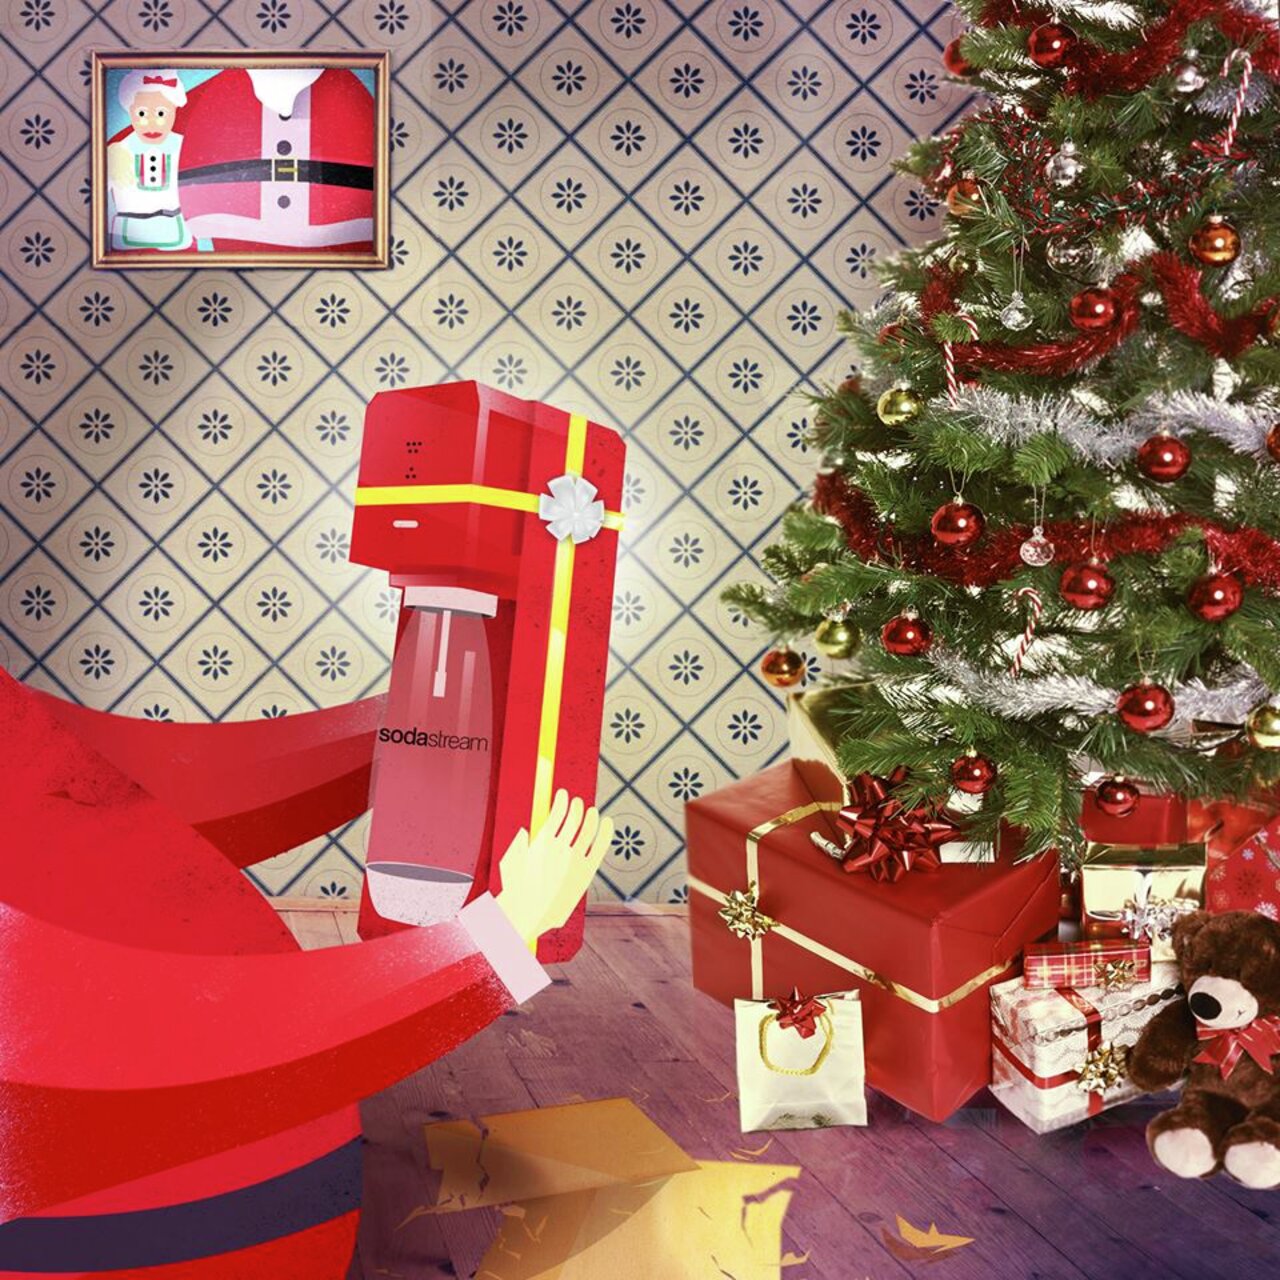 Brus med bismak: Styr unna brusmaskiner fra SodaStream når du kjøper julepresanger i år, oppfordrer Ingrid Rostad. 